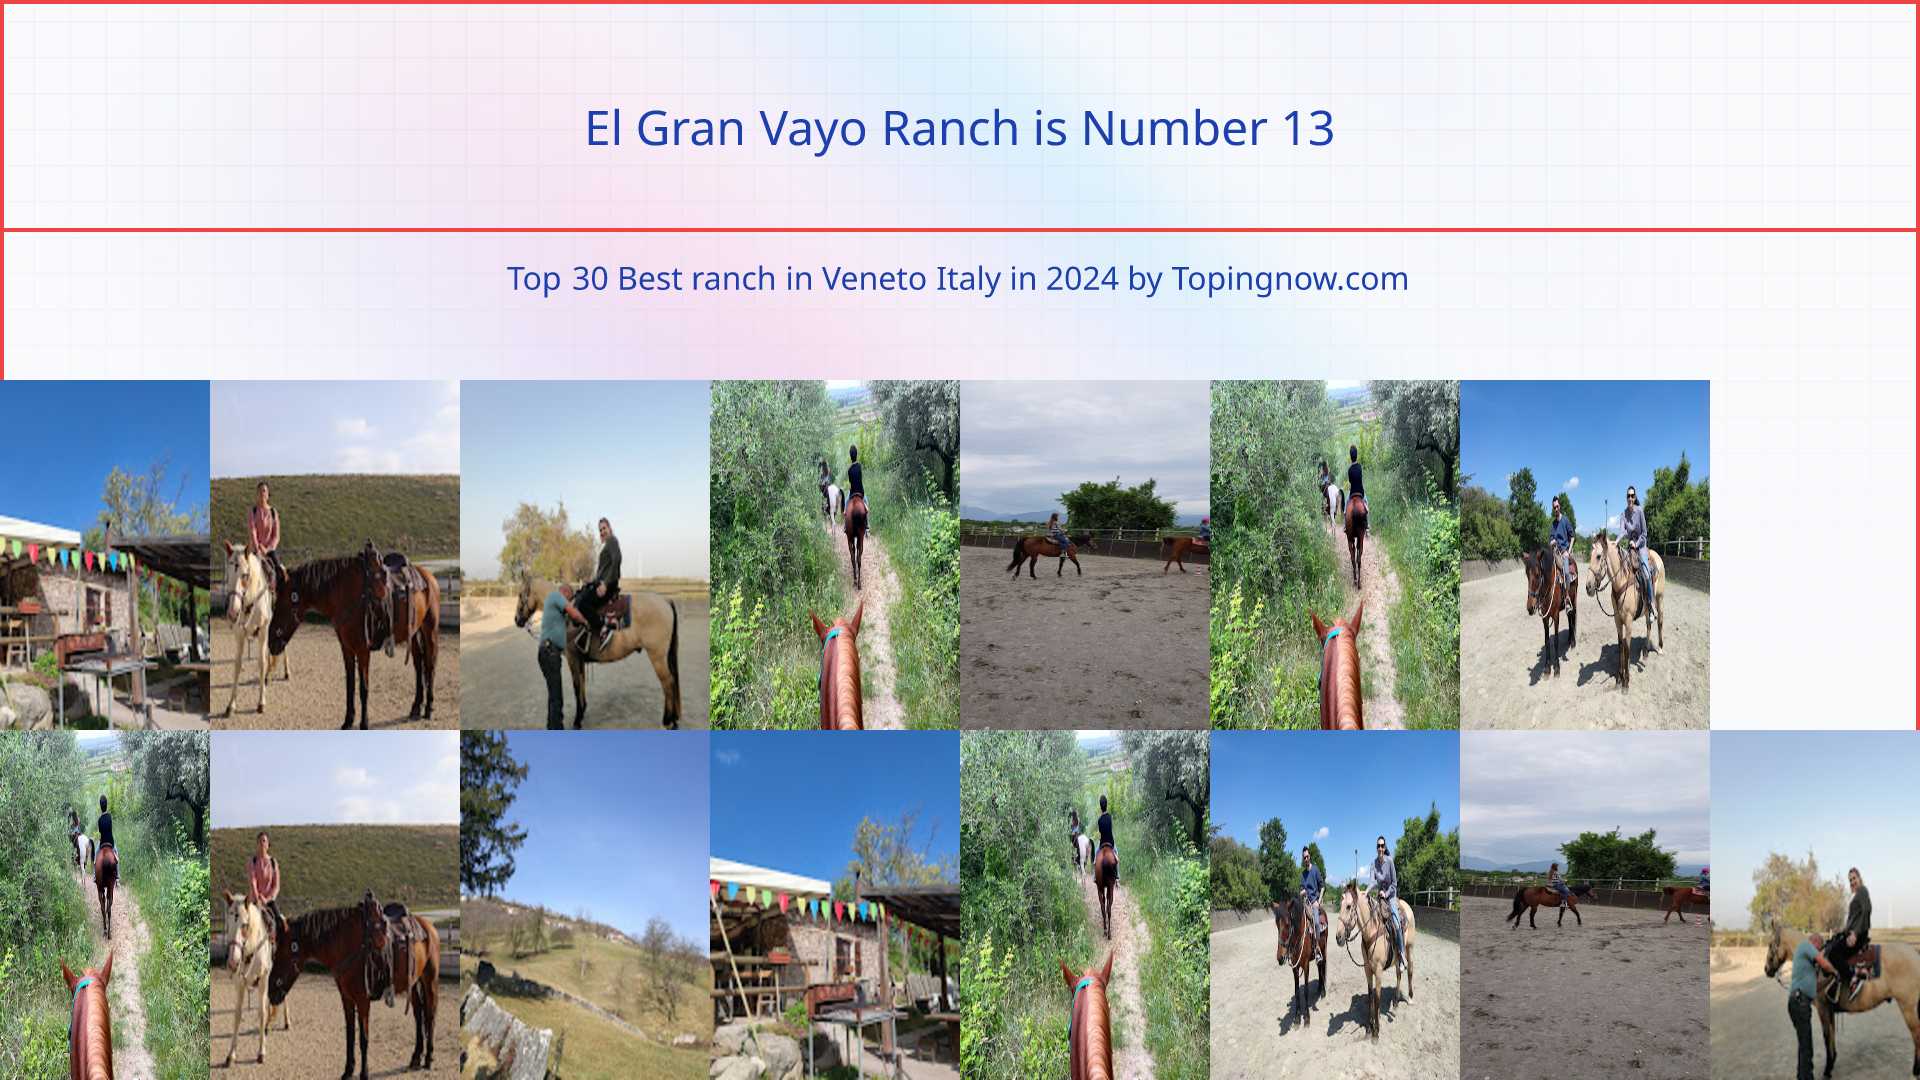 El Gran Vayo Ranch: Top 30 Best ranch in Veneto Italy in 2024